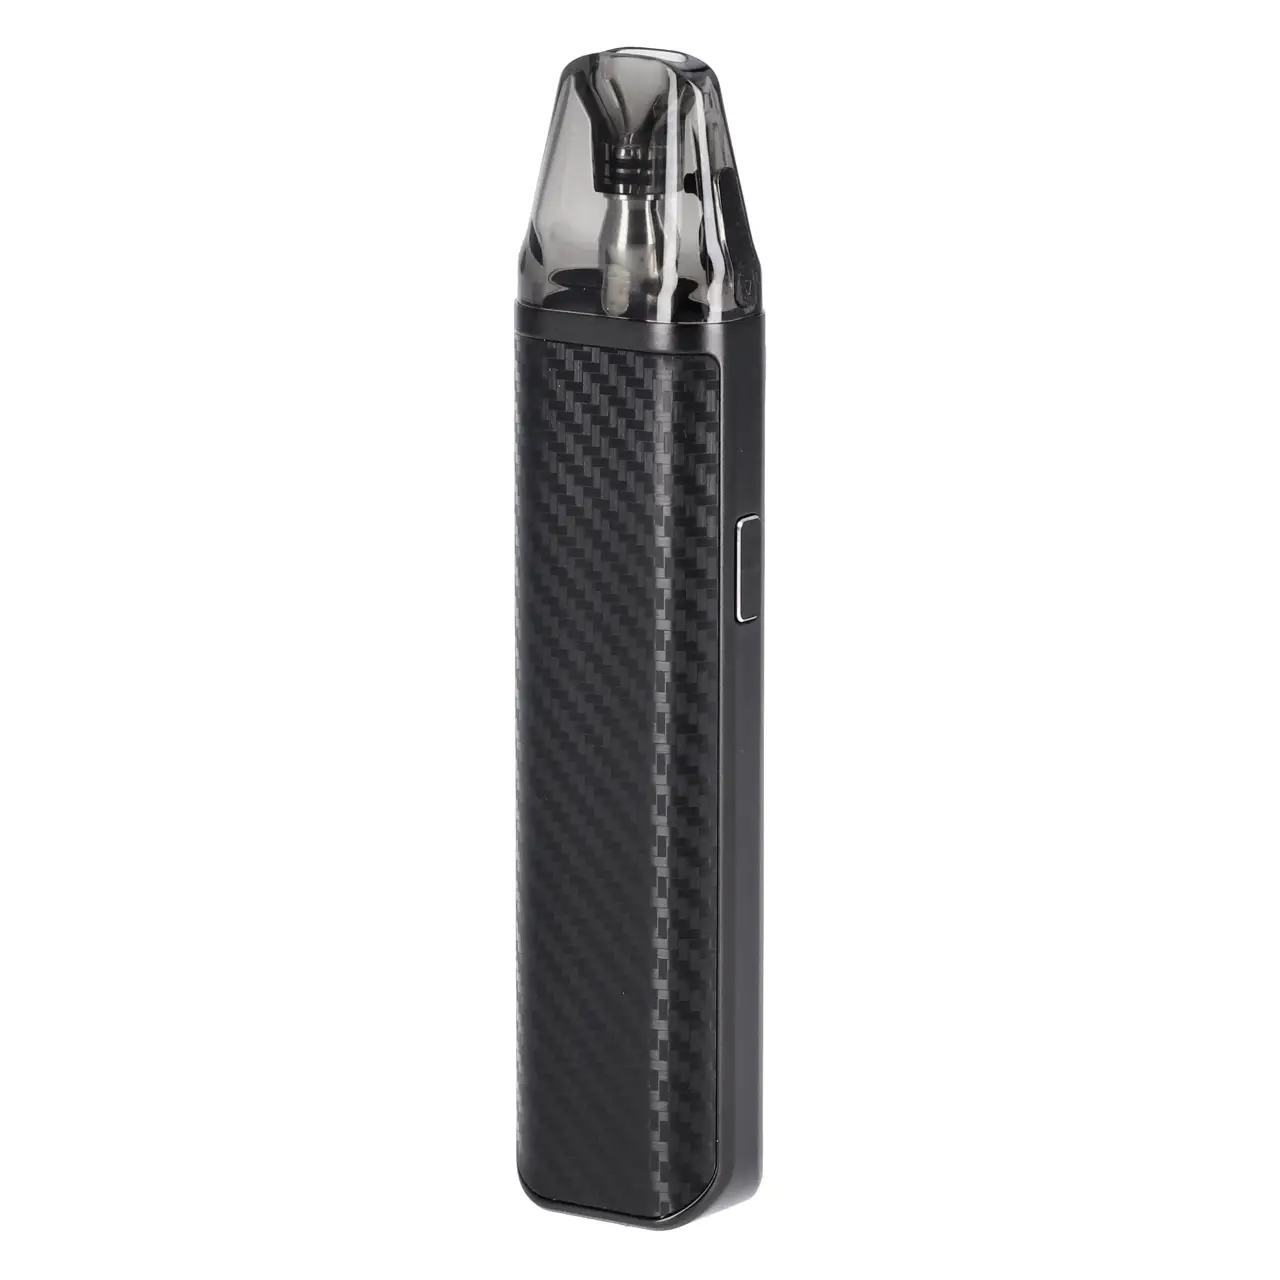 Oxva Xlim Pro E-Zigarette in Carbon Black von schräg hinten